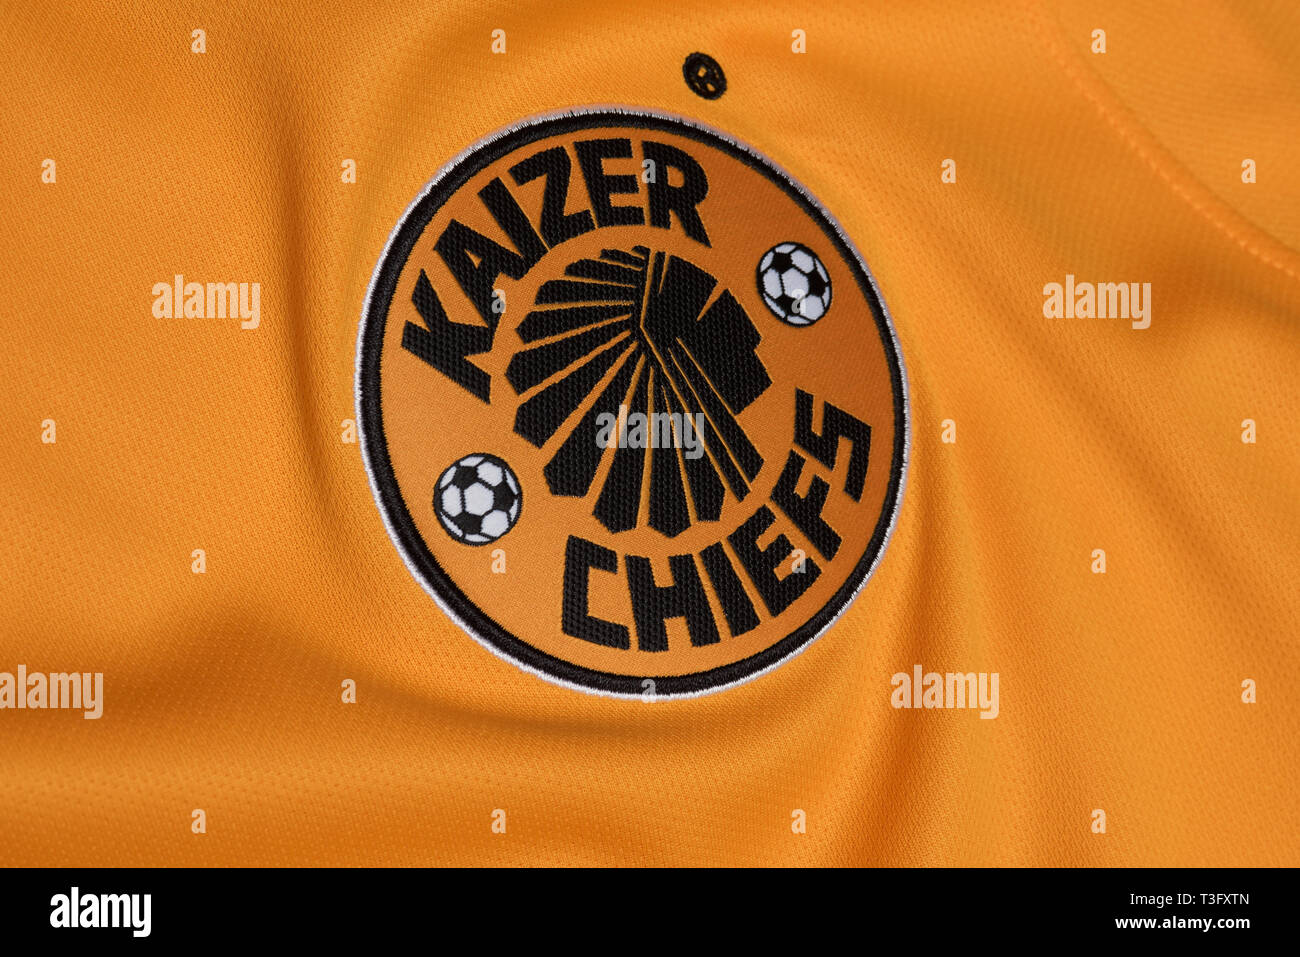 kaizer chiefs replica shirt